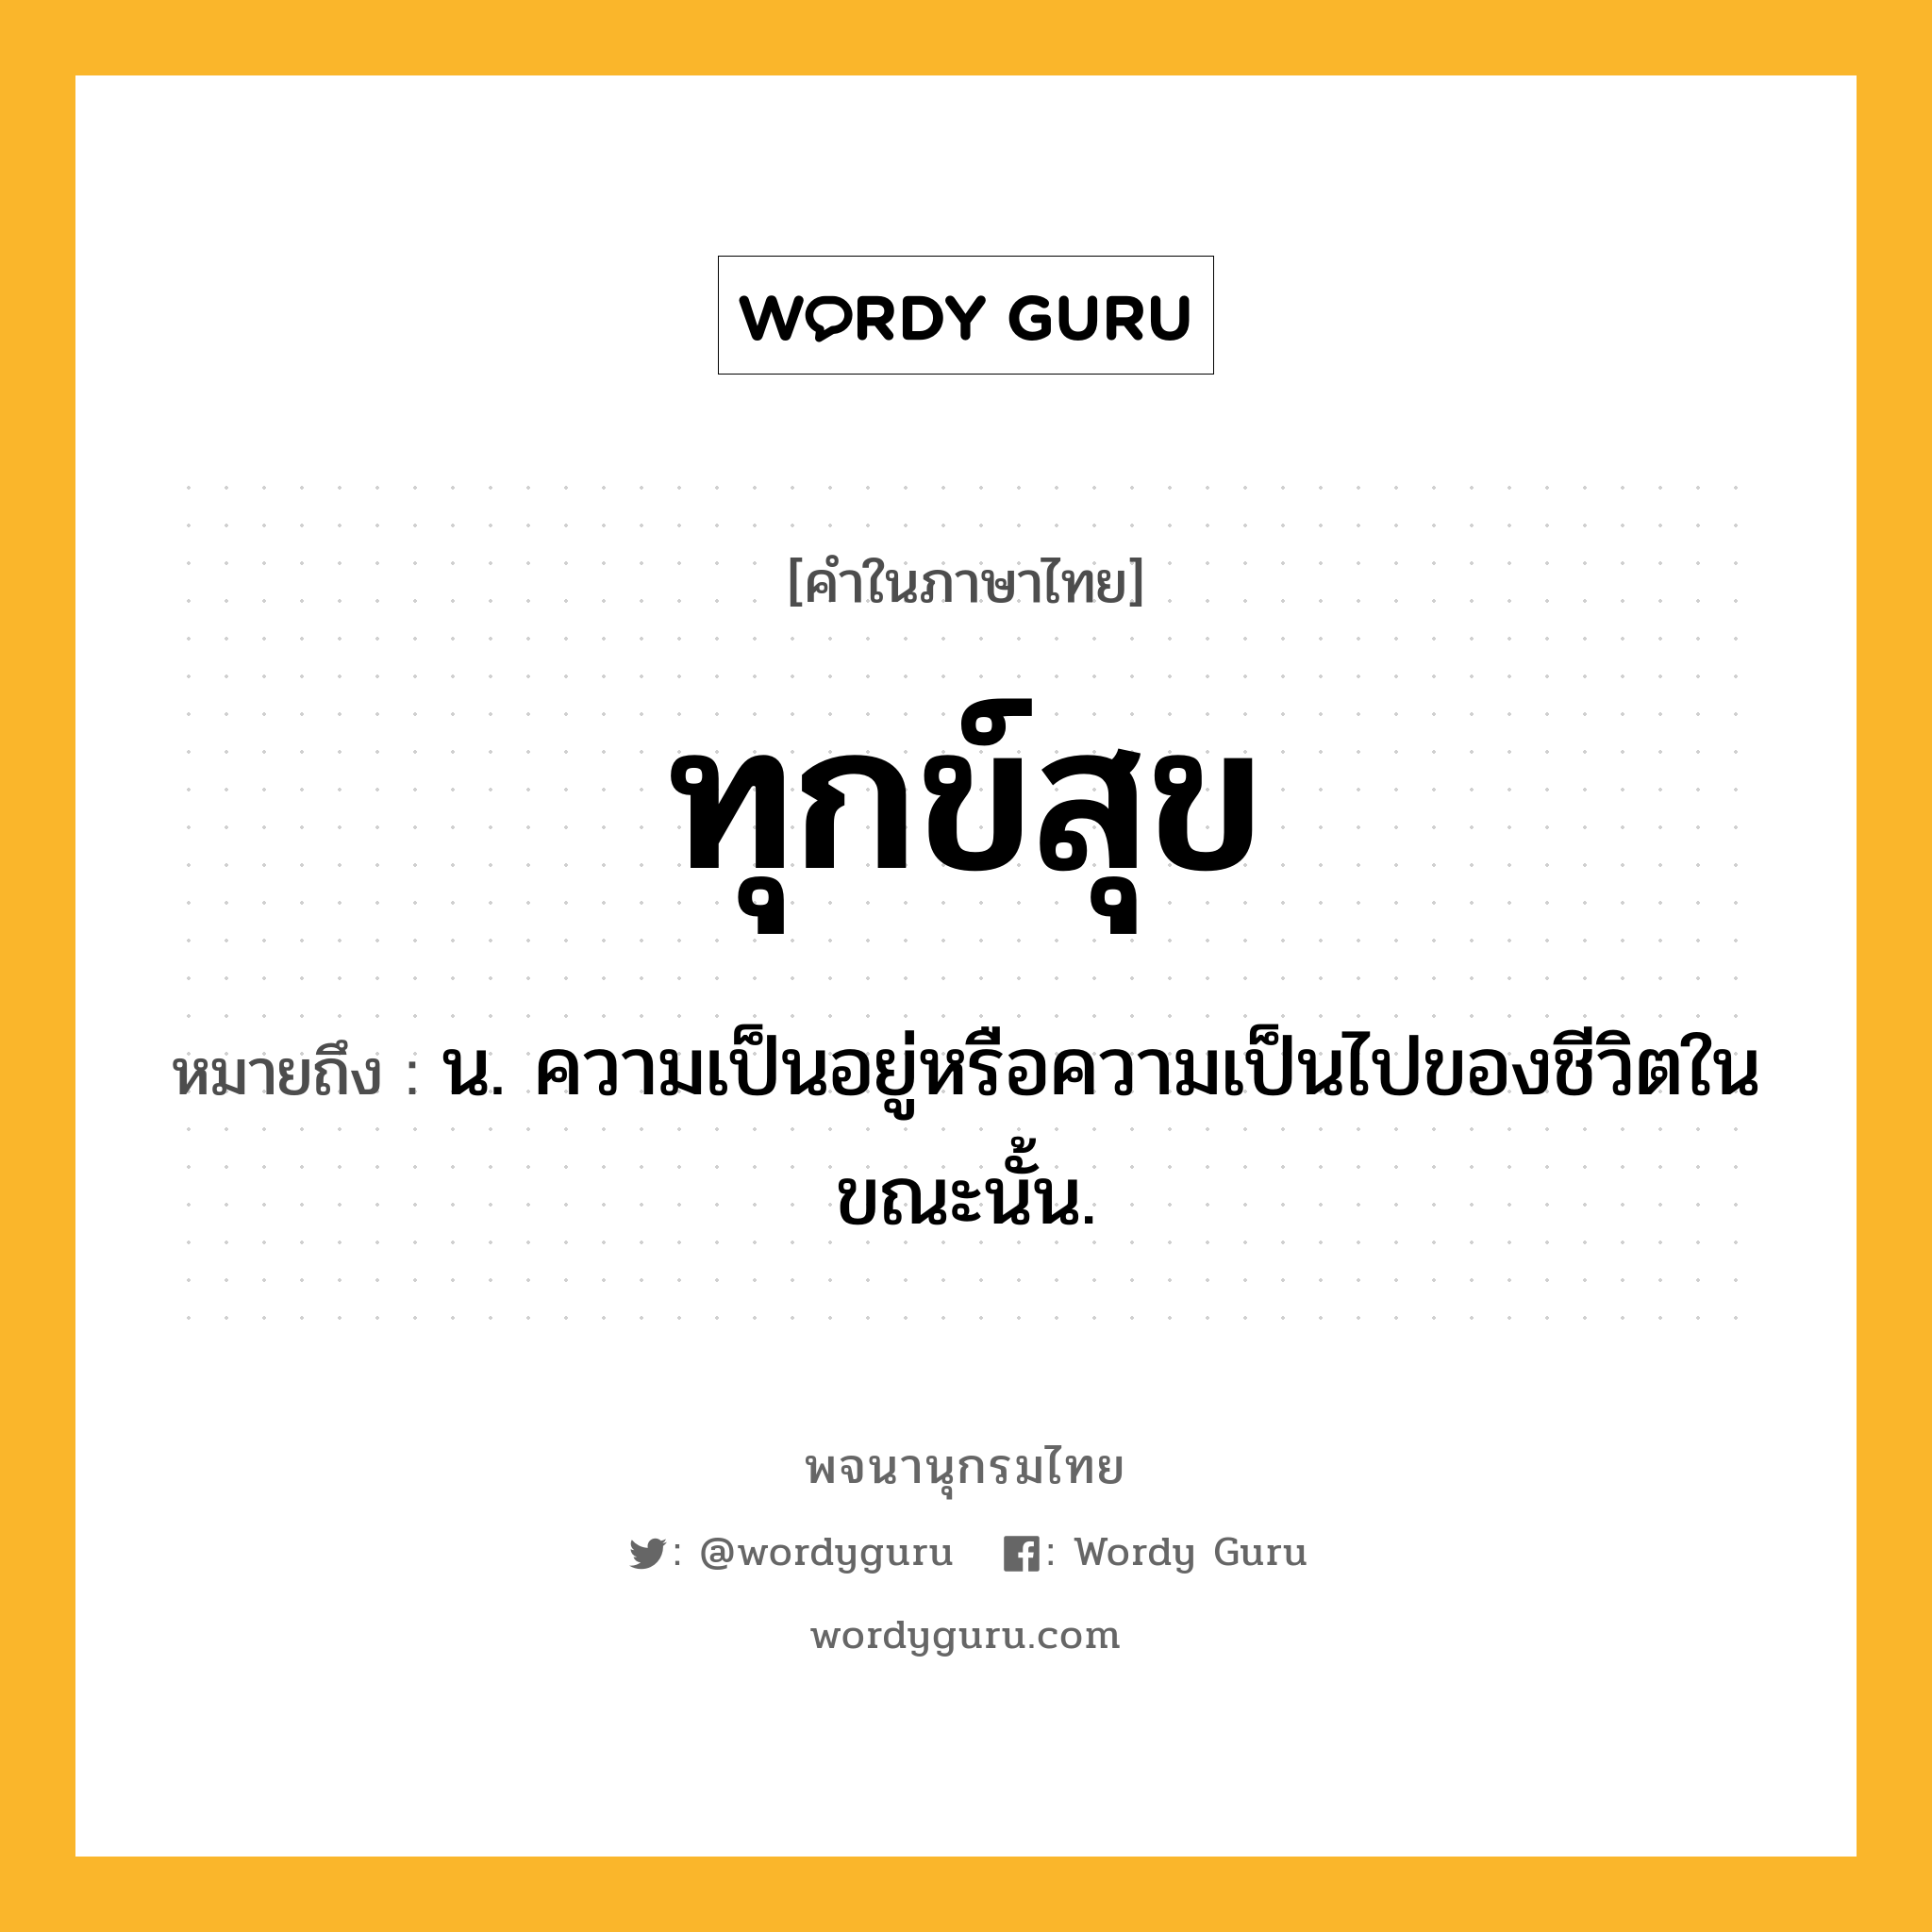 ทุกข์สุข ความหมาย หมายถึงอะไร?, คำในภาษาไทย ทุกข์สุข หมายถึง น. ความเป็นอยู่หรือความเป็นไปของชีวิตในขณะนั้น.